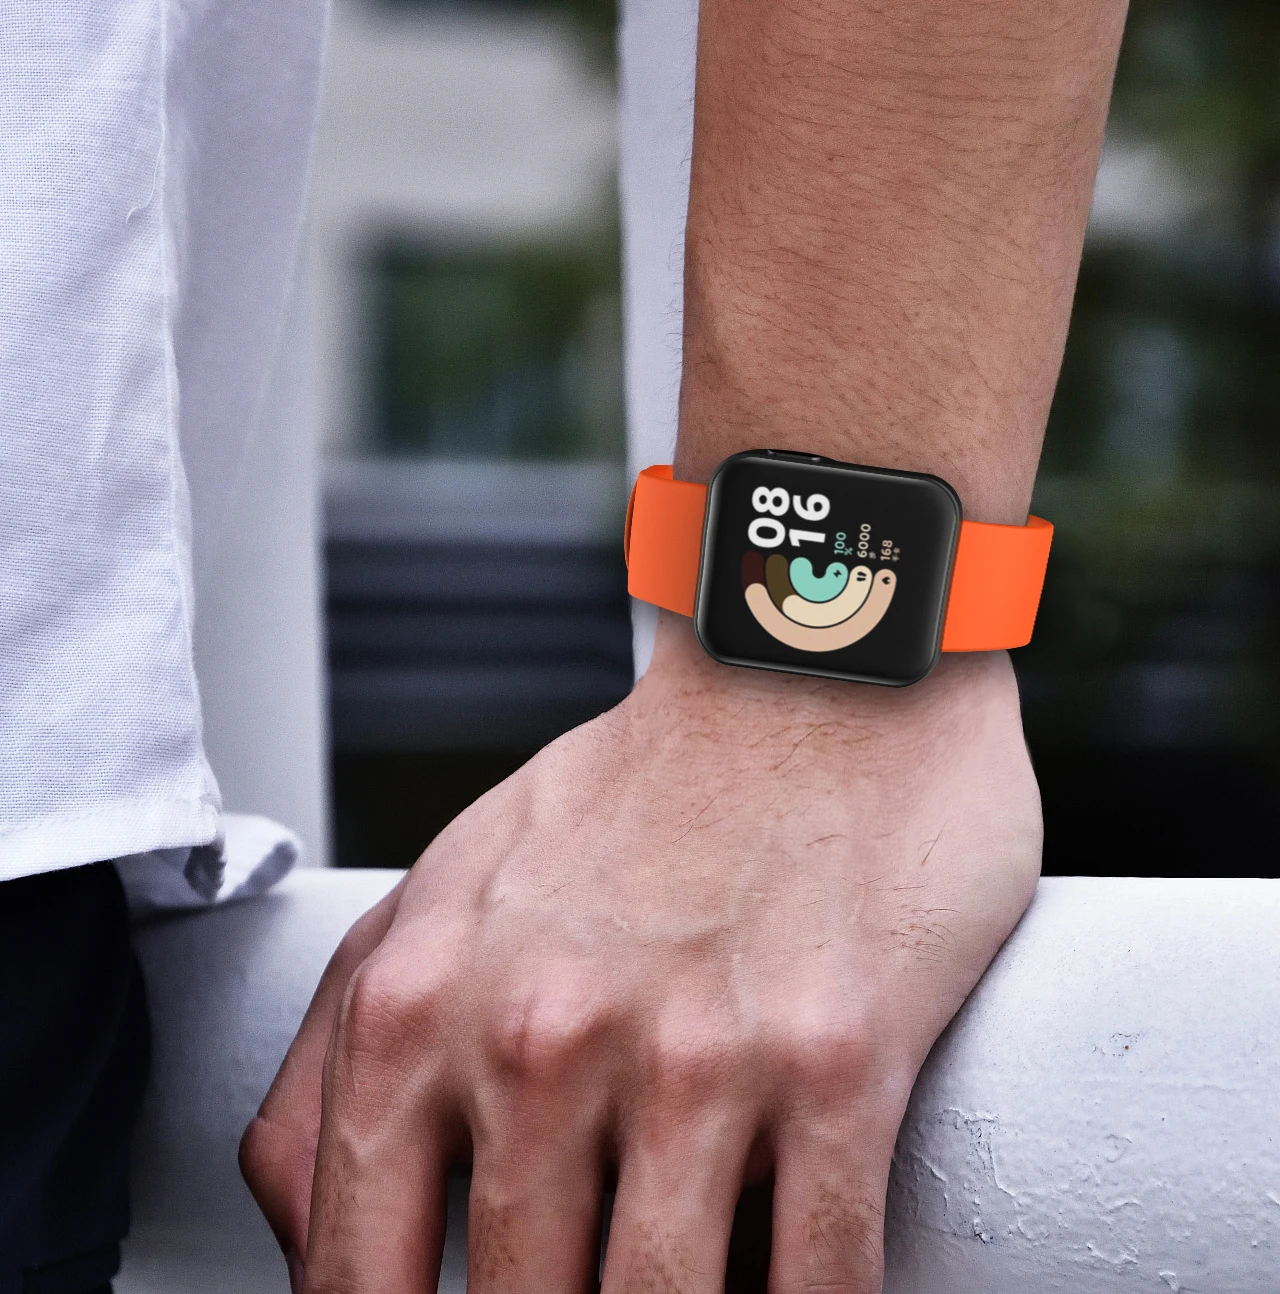 Correas de repuesto compatibles con Xiaomi Mi Watch Lite/Redmi Watch 1,  correa de muñeca deportiva de silicona ajustable para Xiaomi Mi Watch